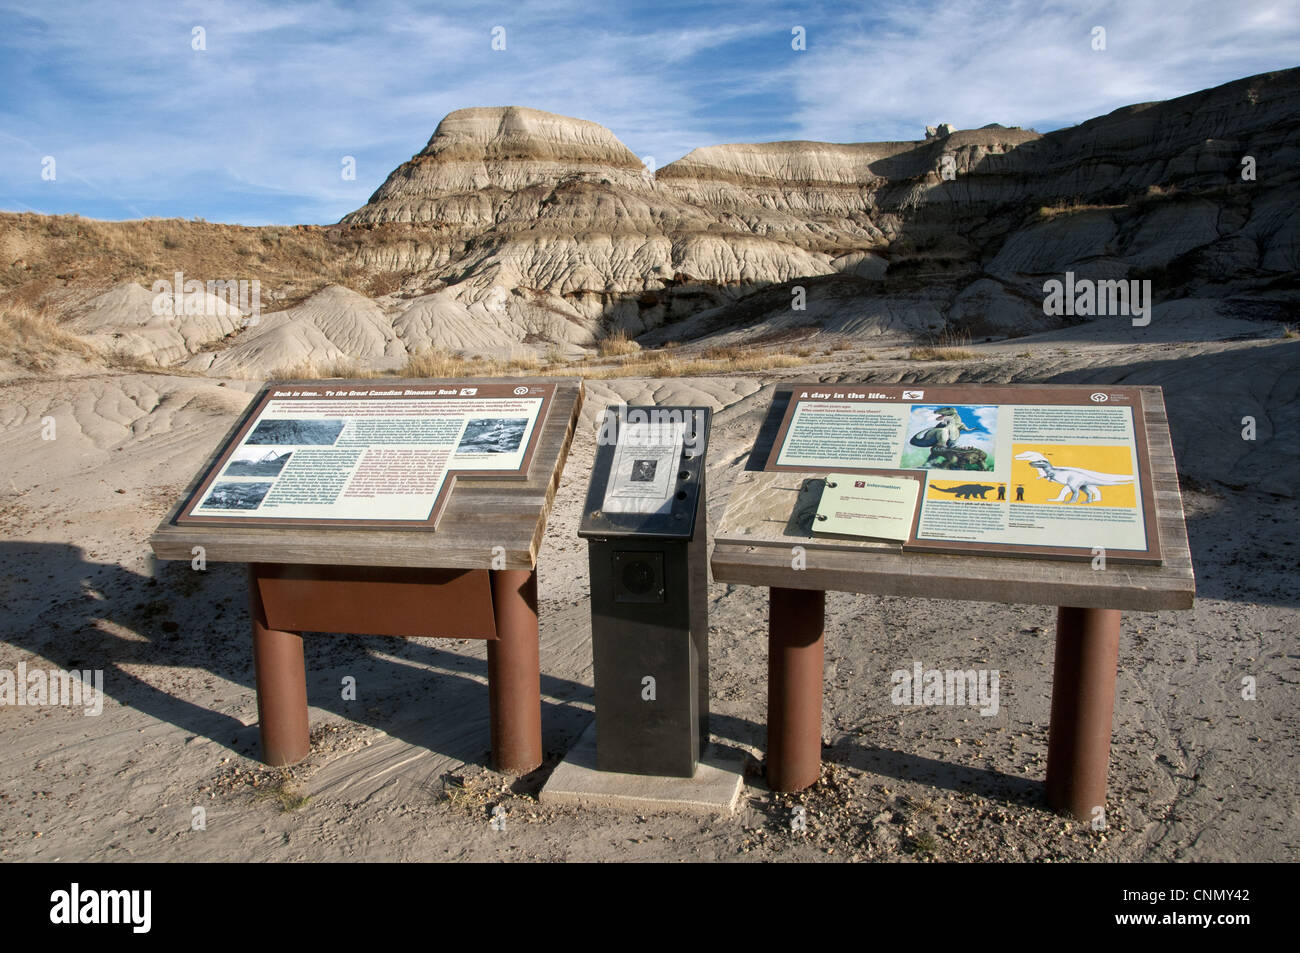 Dinosaur information boards in badlands habitat, Dinosaur Provincial Park, Alberta, Canada, october Stock Photo